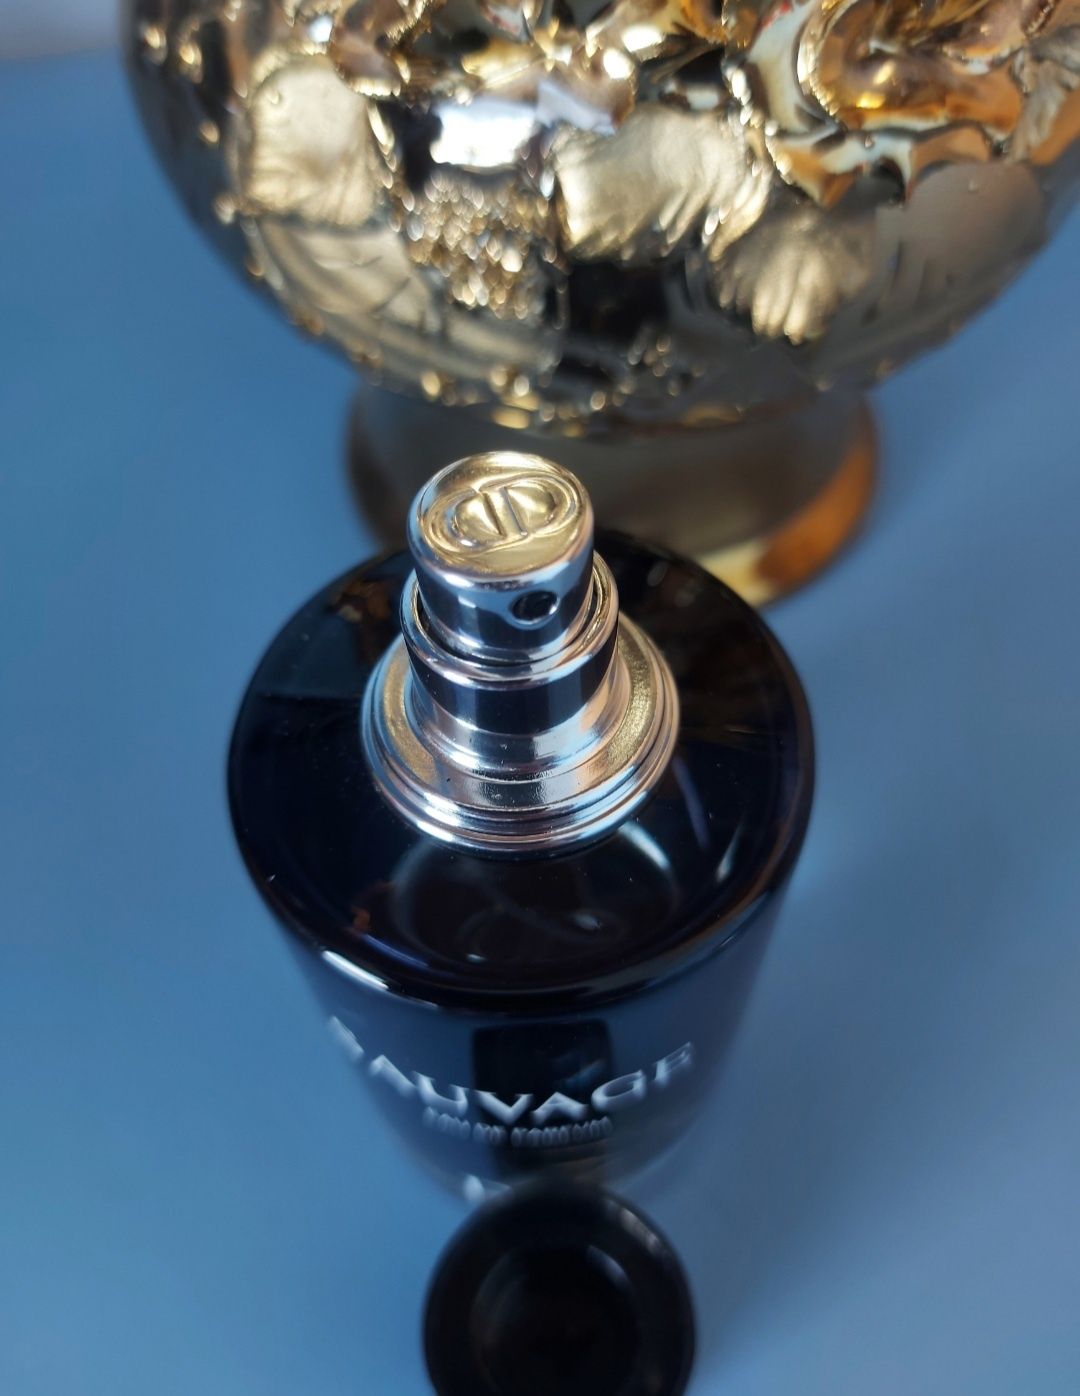 Oferta Parfum Sauvage Dior sigilat